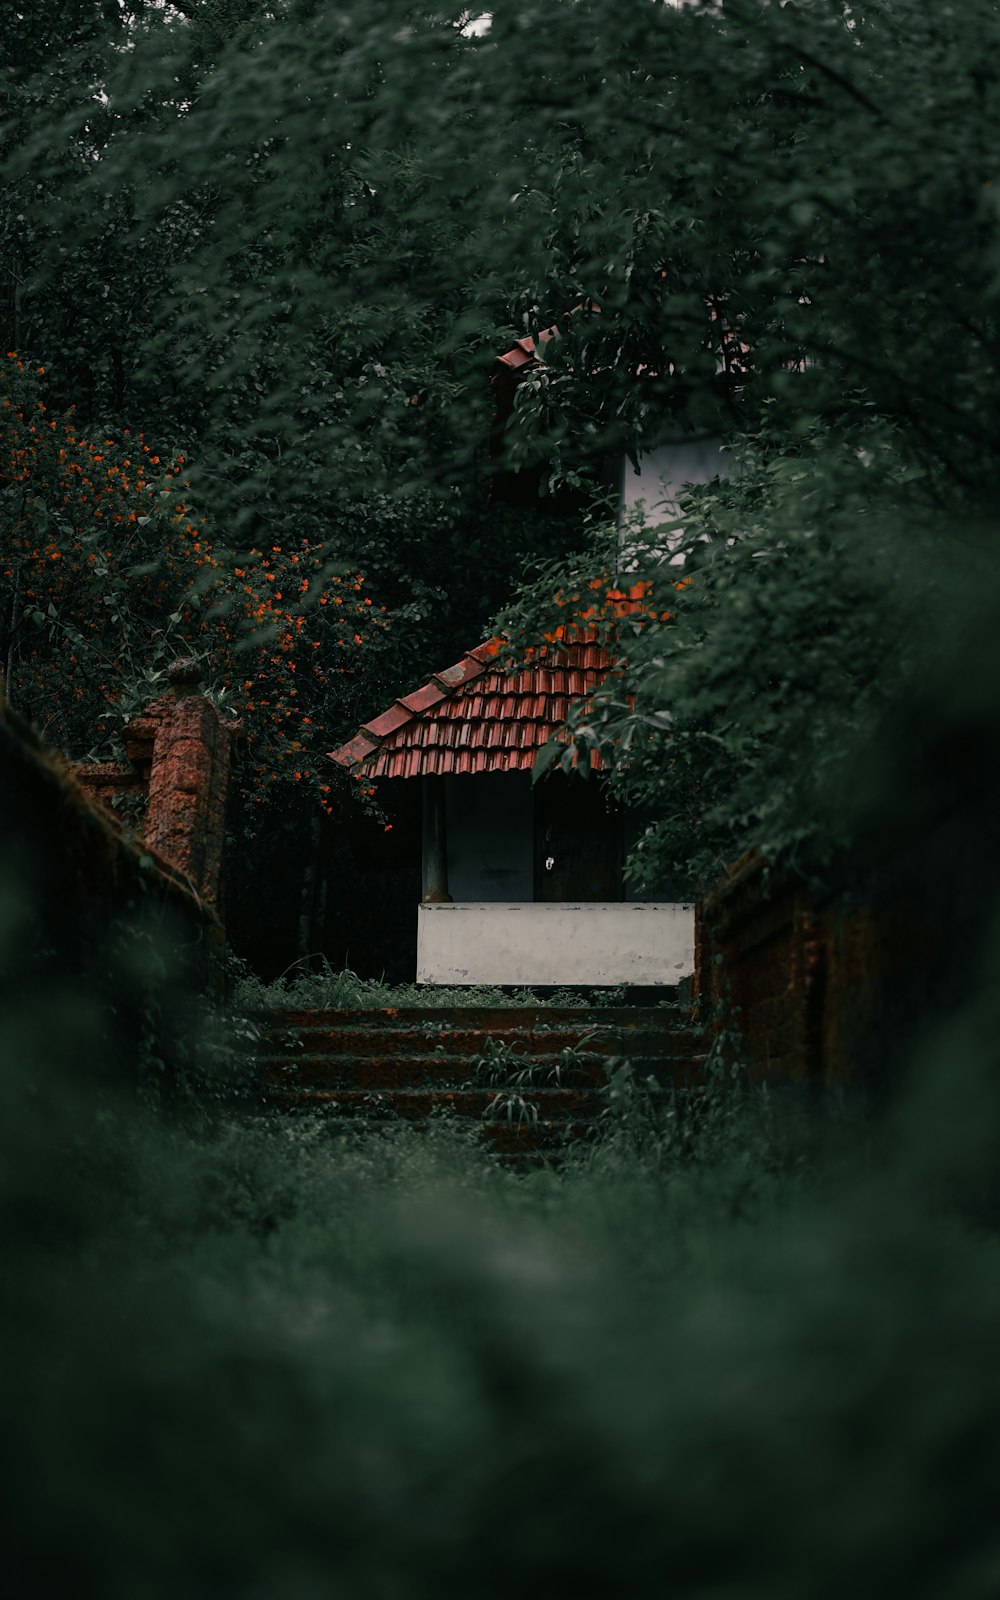 Braunes und weißes Haus in der Nähe von grünen Bäumen